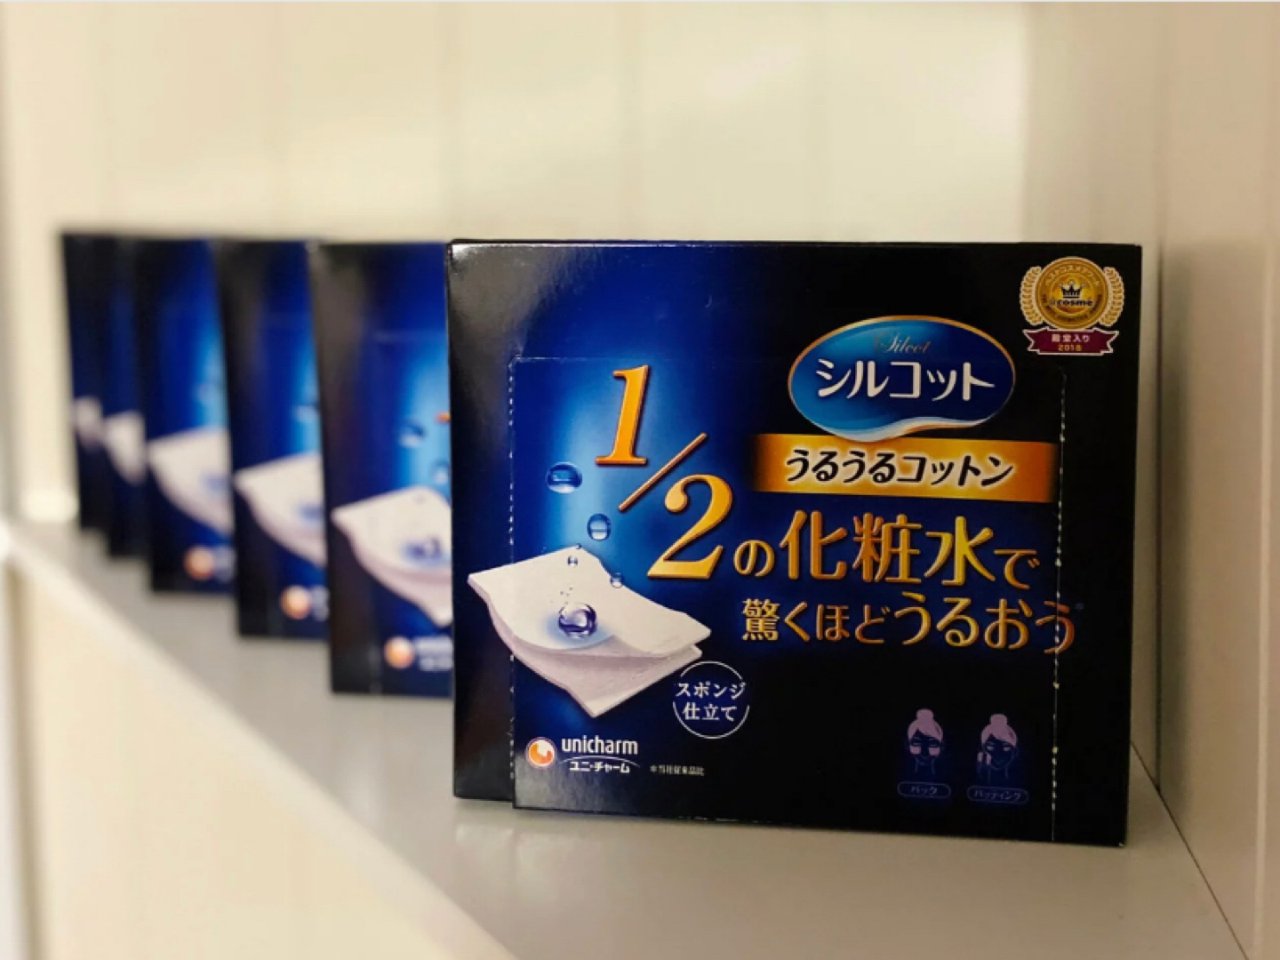 日本UNICHARM尤妮佳 1/2省水超吸收化妆棉 40枚入 COSME大赏第一位 3盒入 - 亚米网